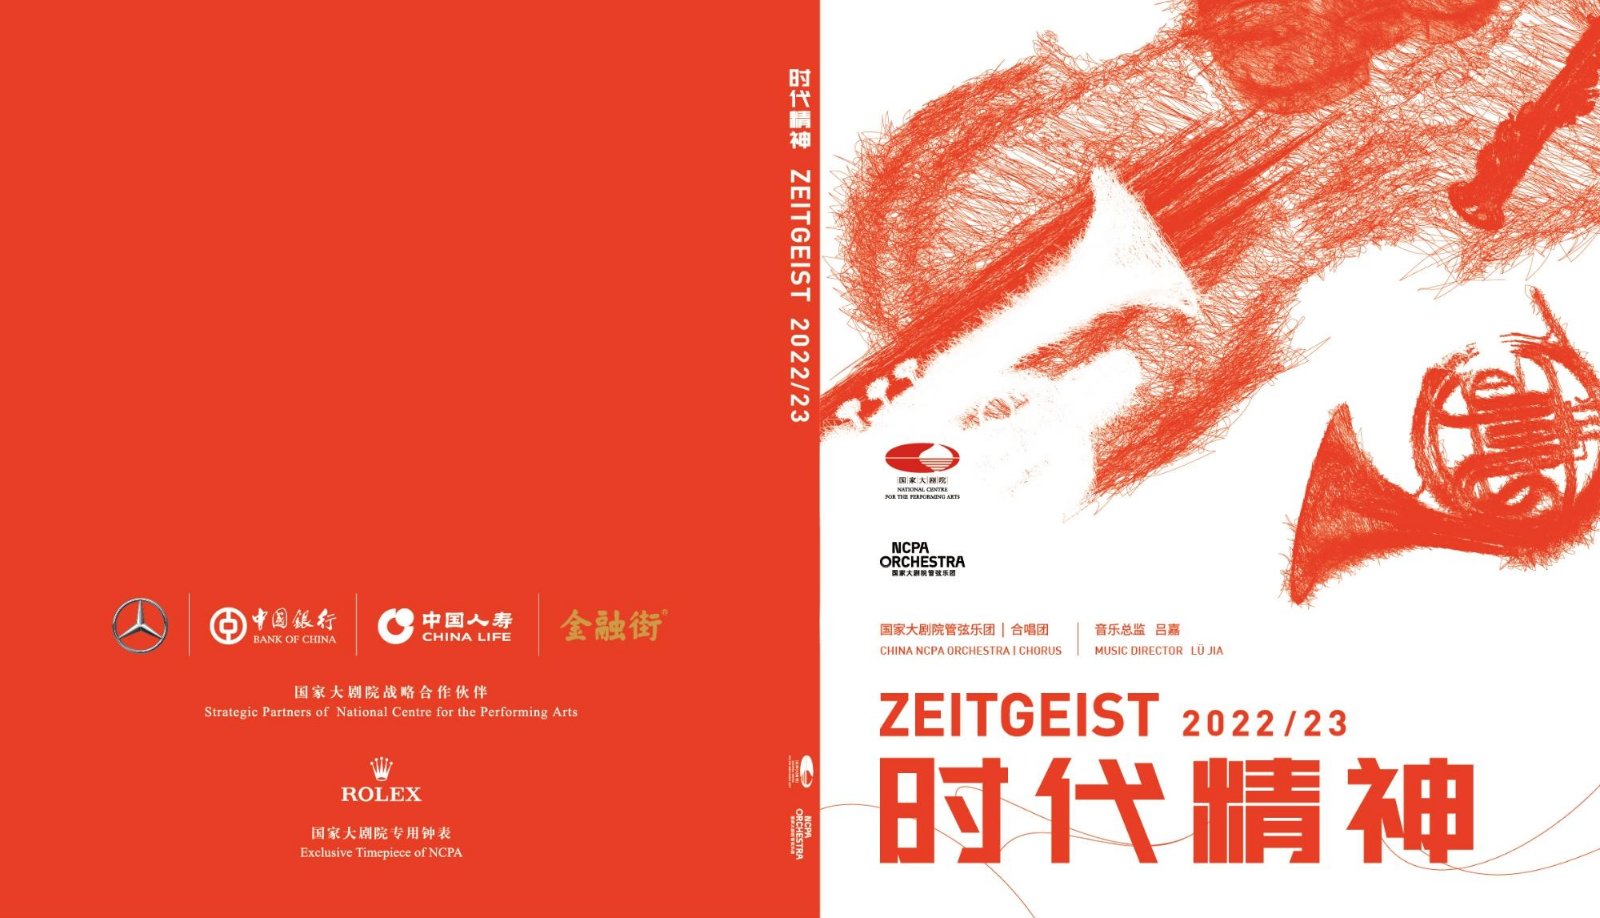 乐季册 | 国家大剧院管弦乐团 2022/23 时代精神